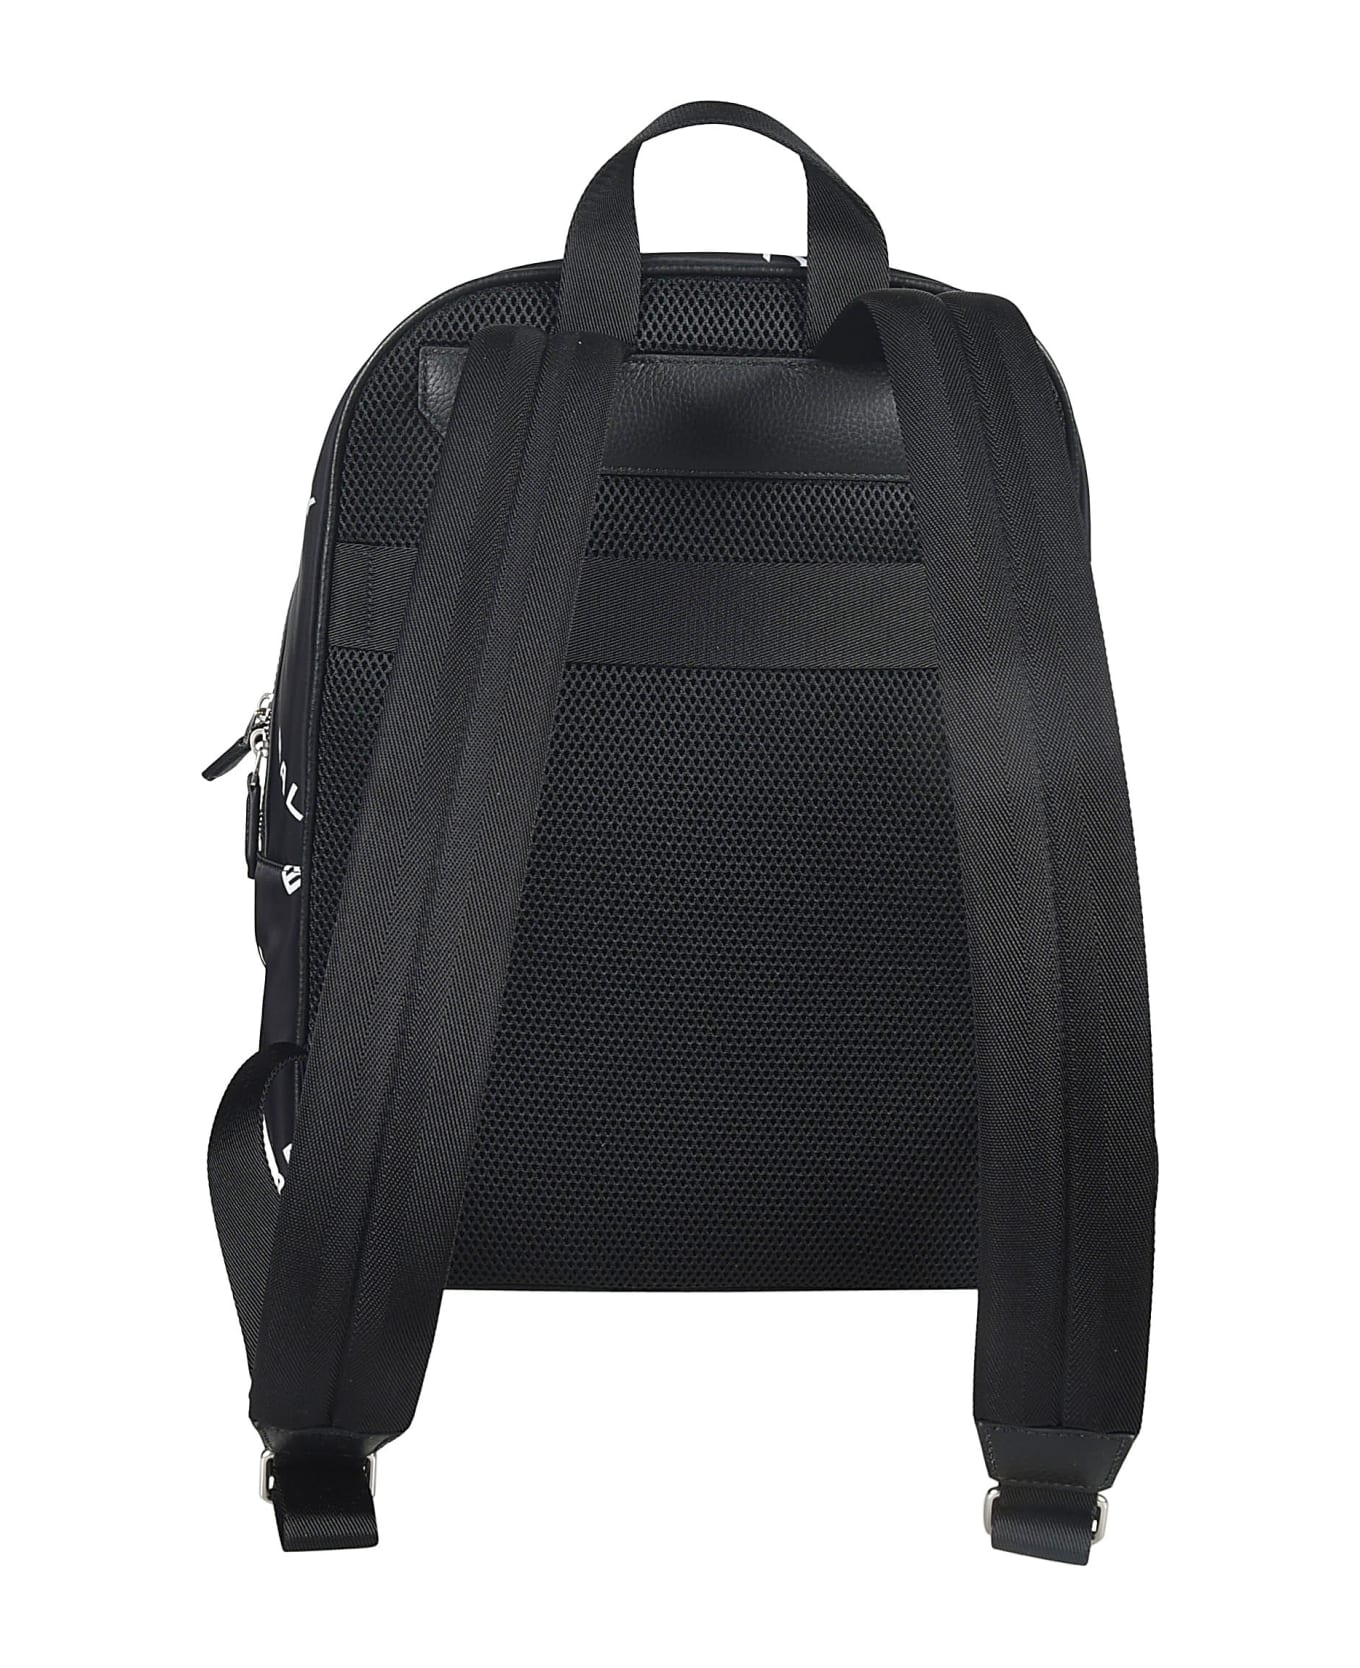 Bally Code Backpack - Black/White